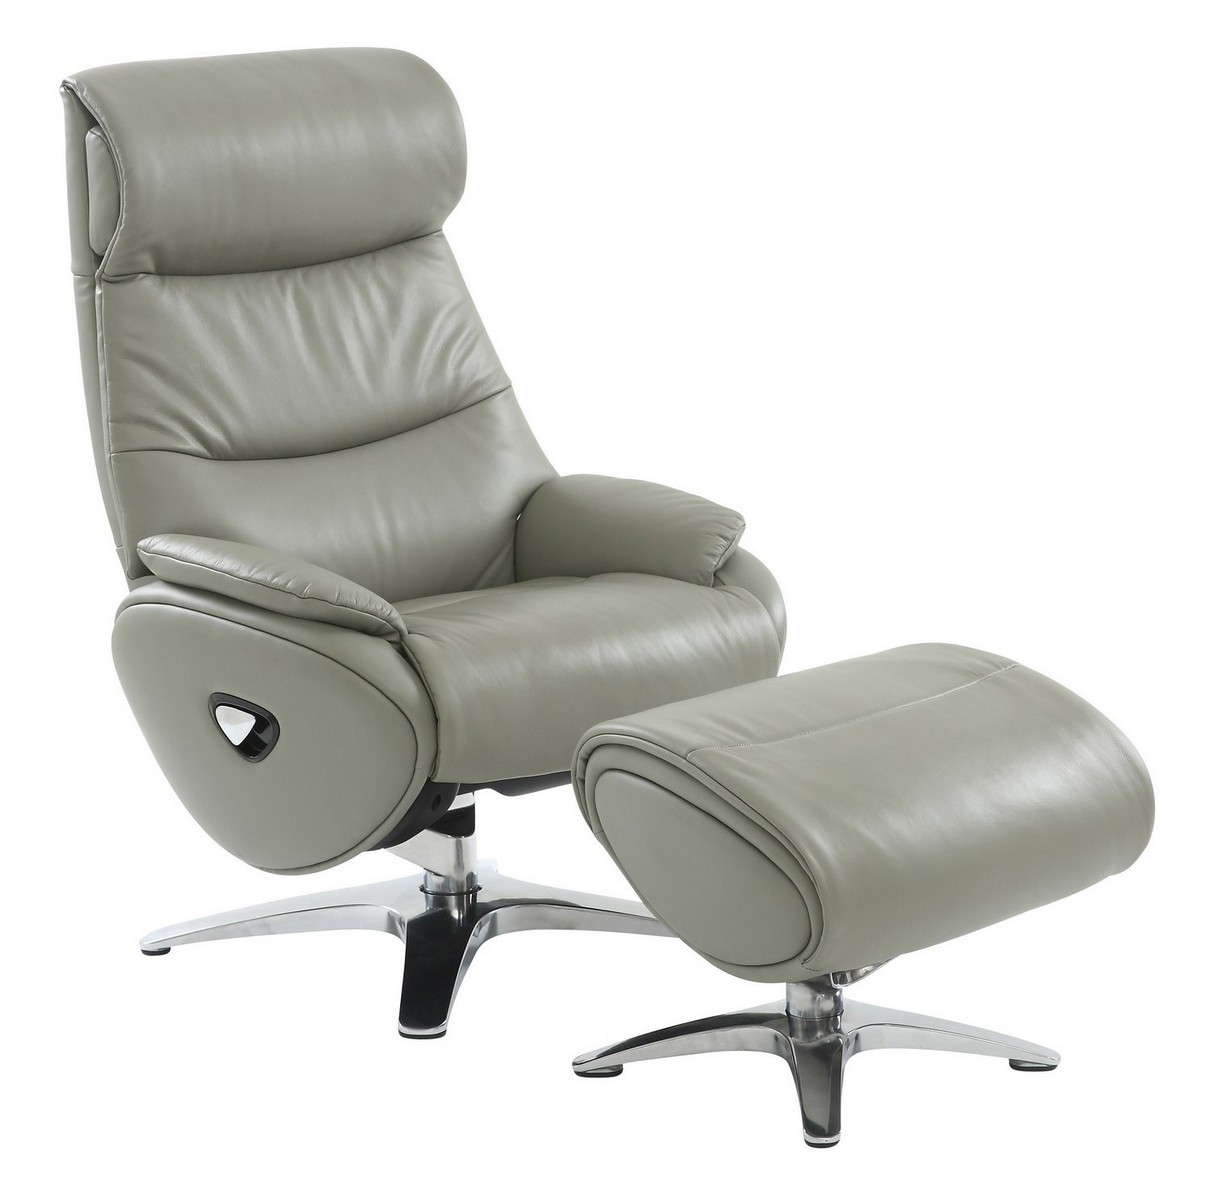 Barcalounger Adler Pedestal Recliner Chair/Ottoman - Capri Gray/Leather Match